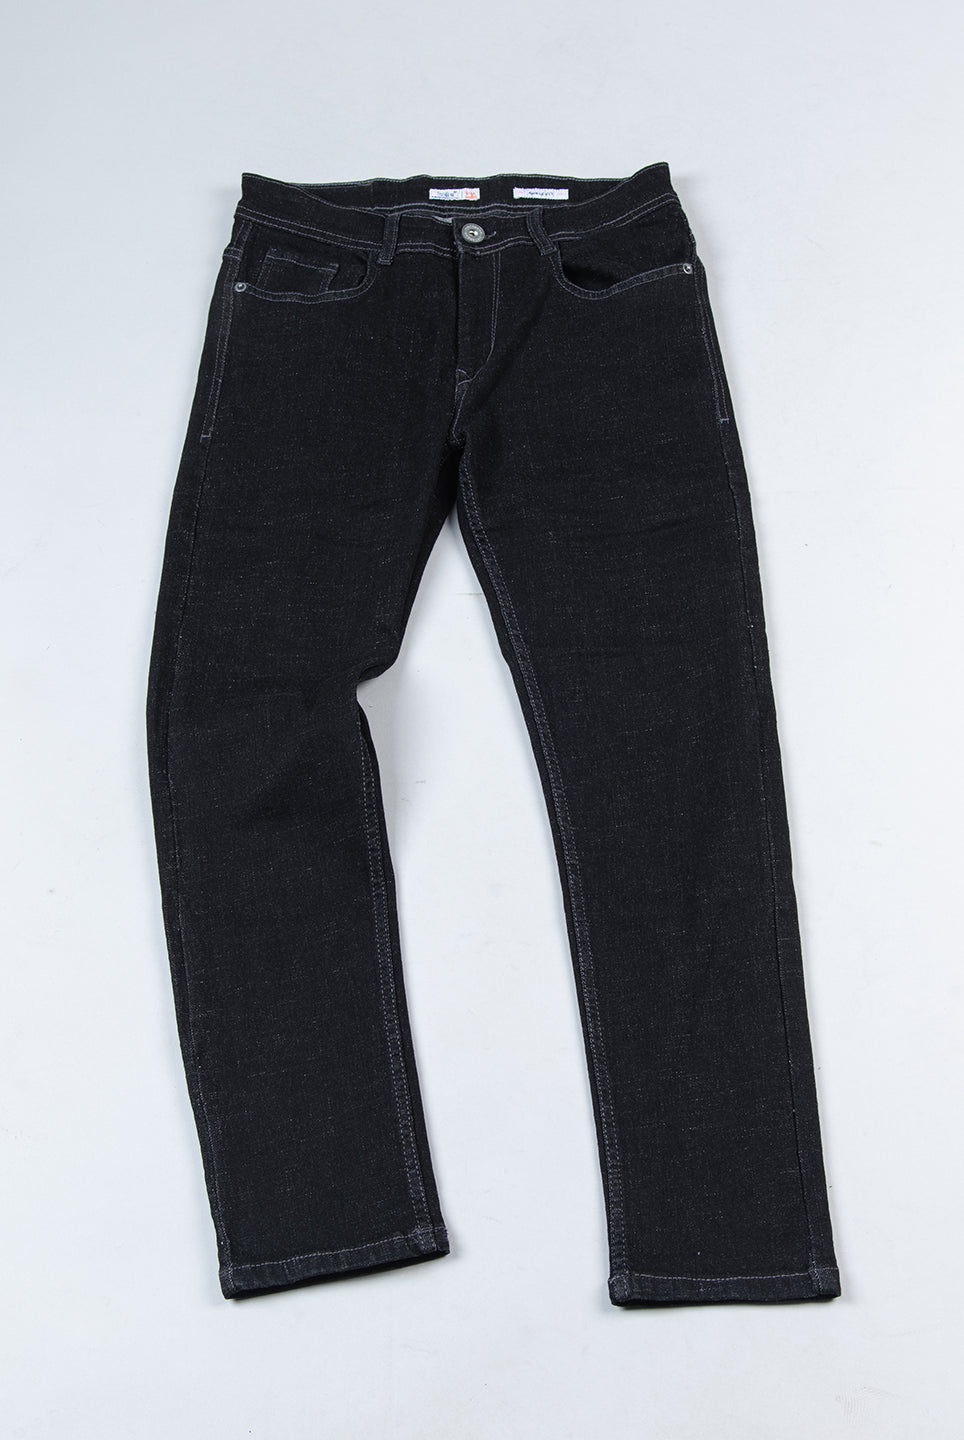 original denim jeans